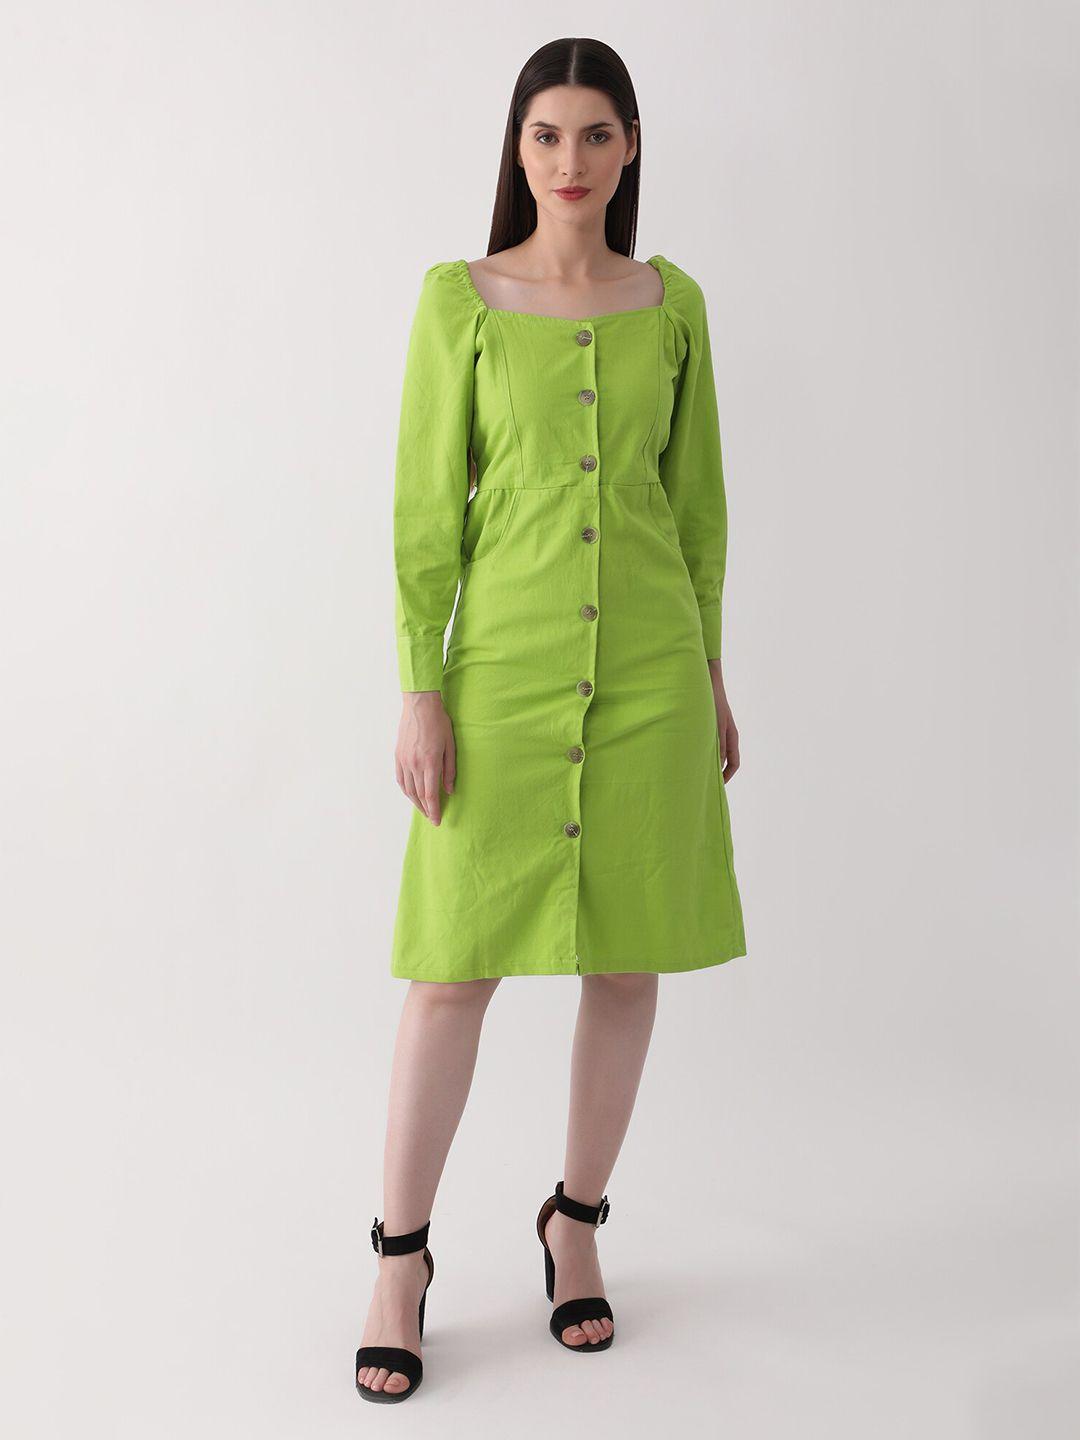 dkgf-fashion-green-a-line-dress